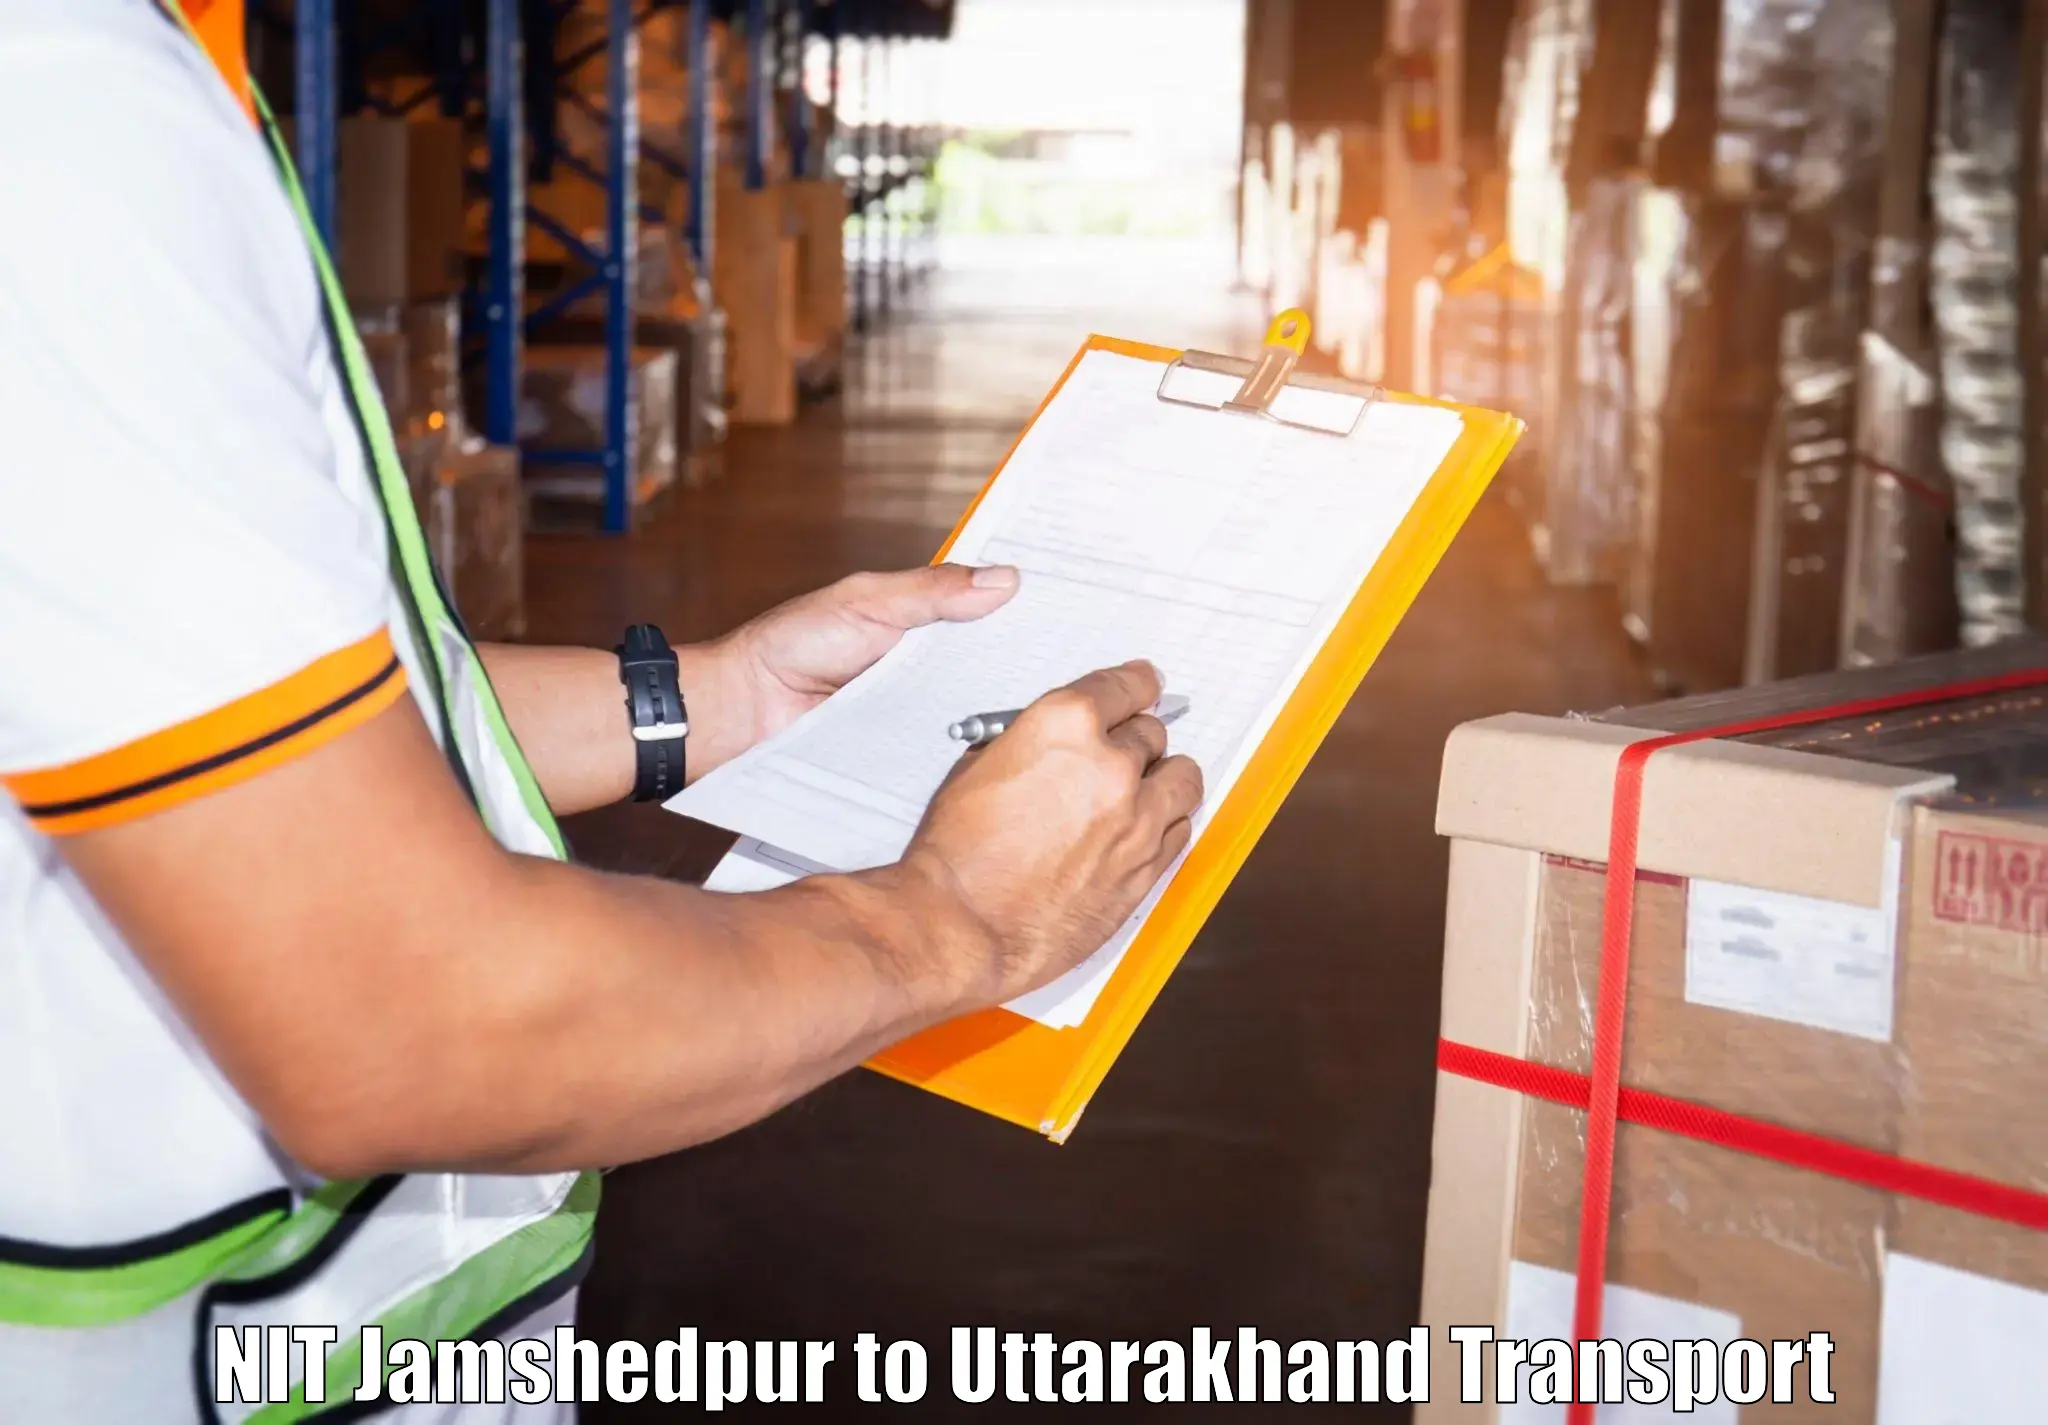 Truck transport companies in India NIT Jamshedpur to Kotdwara